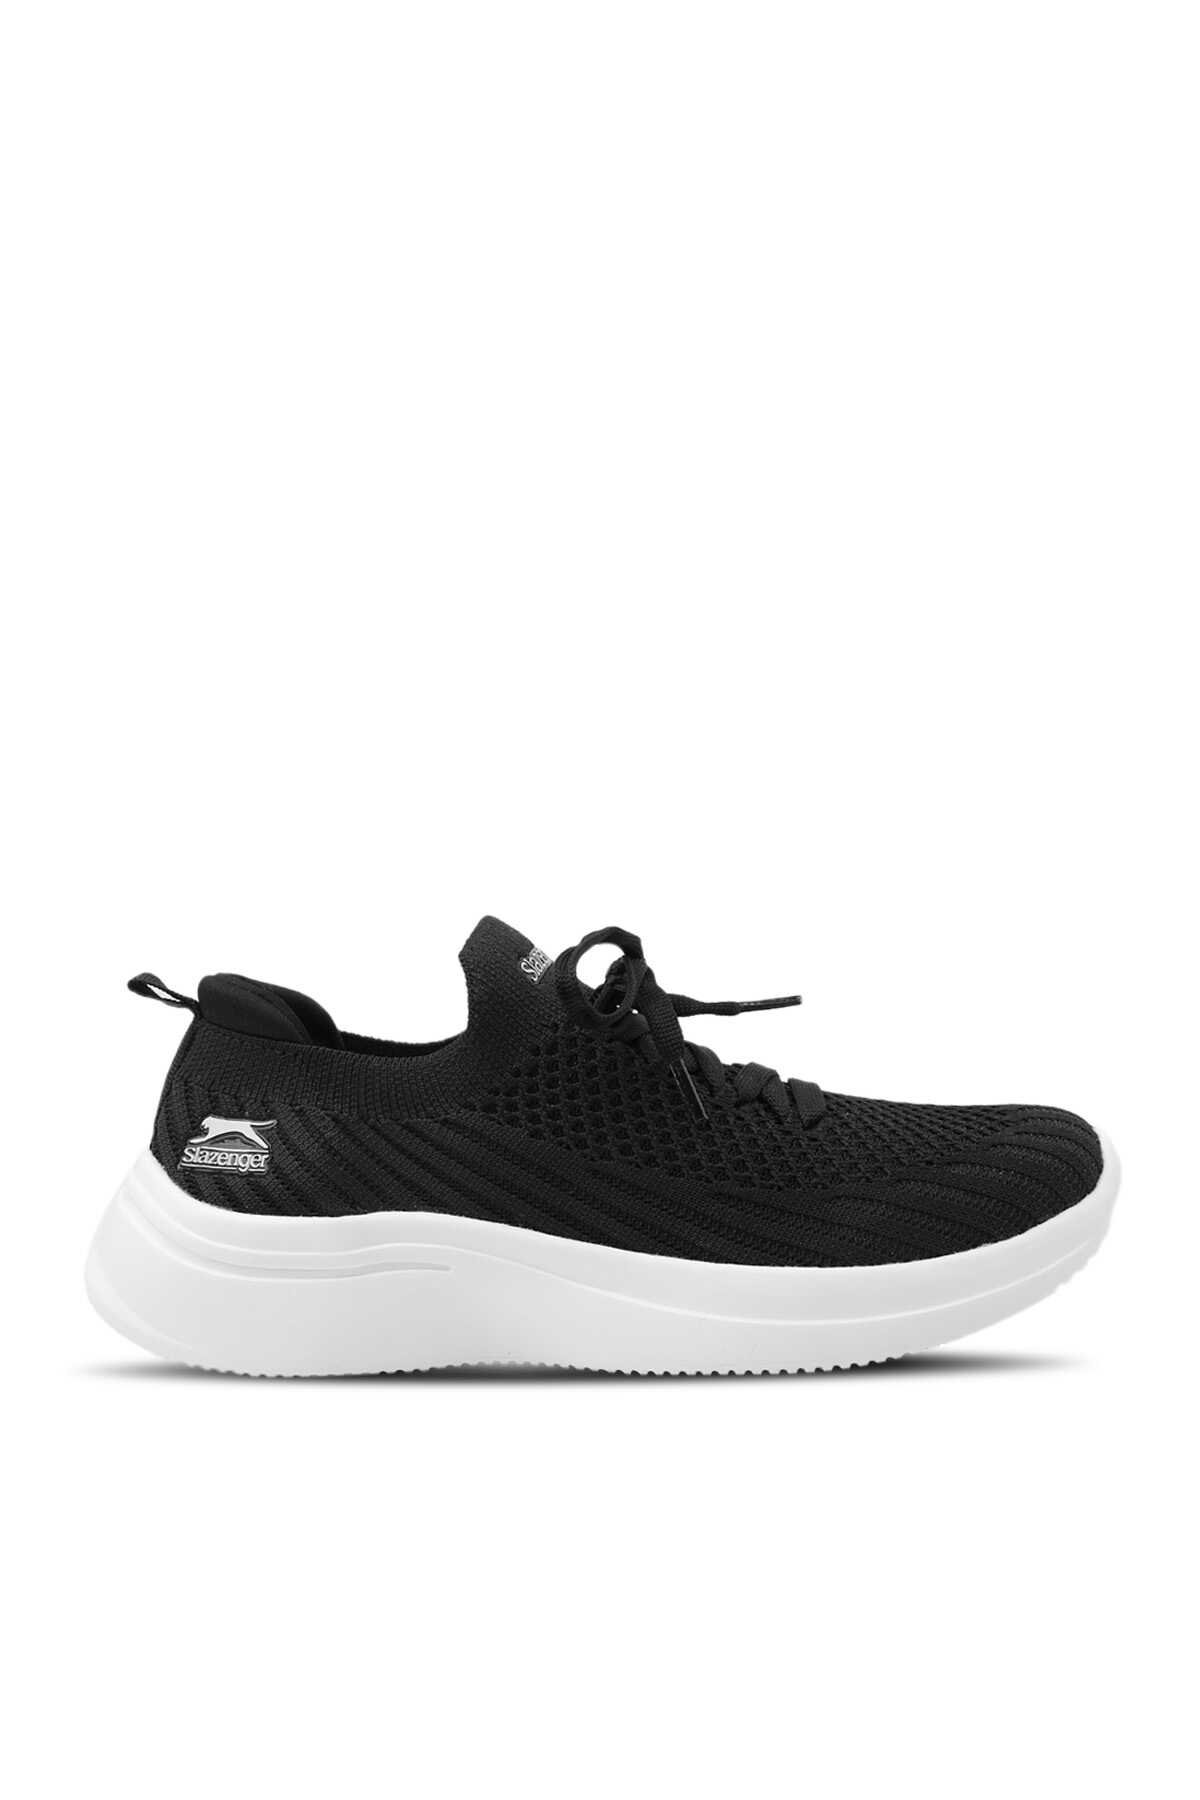 Slazenger - ACCOUNT Sneaker Kadın Ayakkabı Siyah / Beyaz